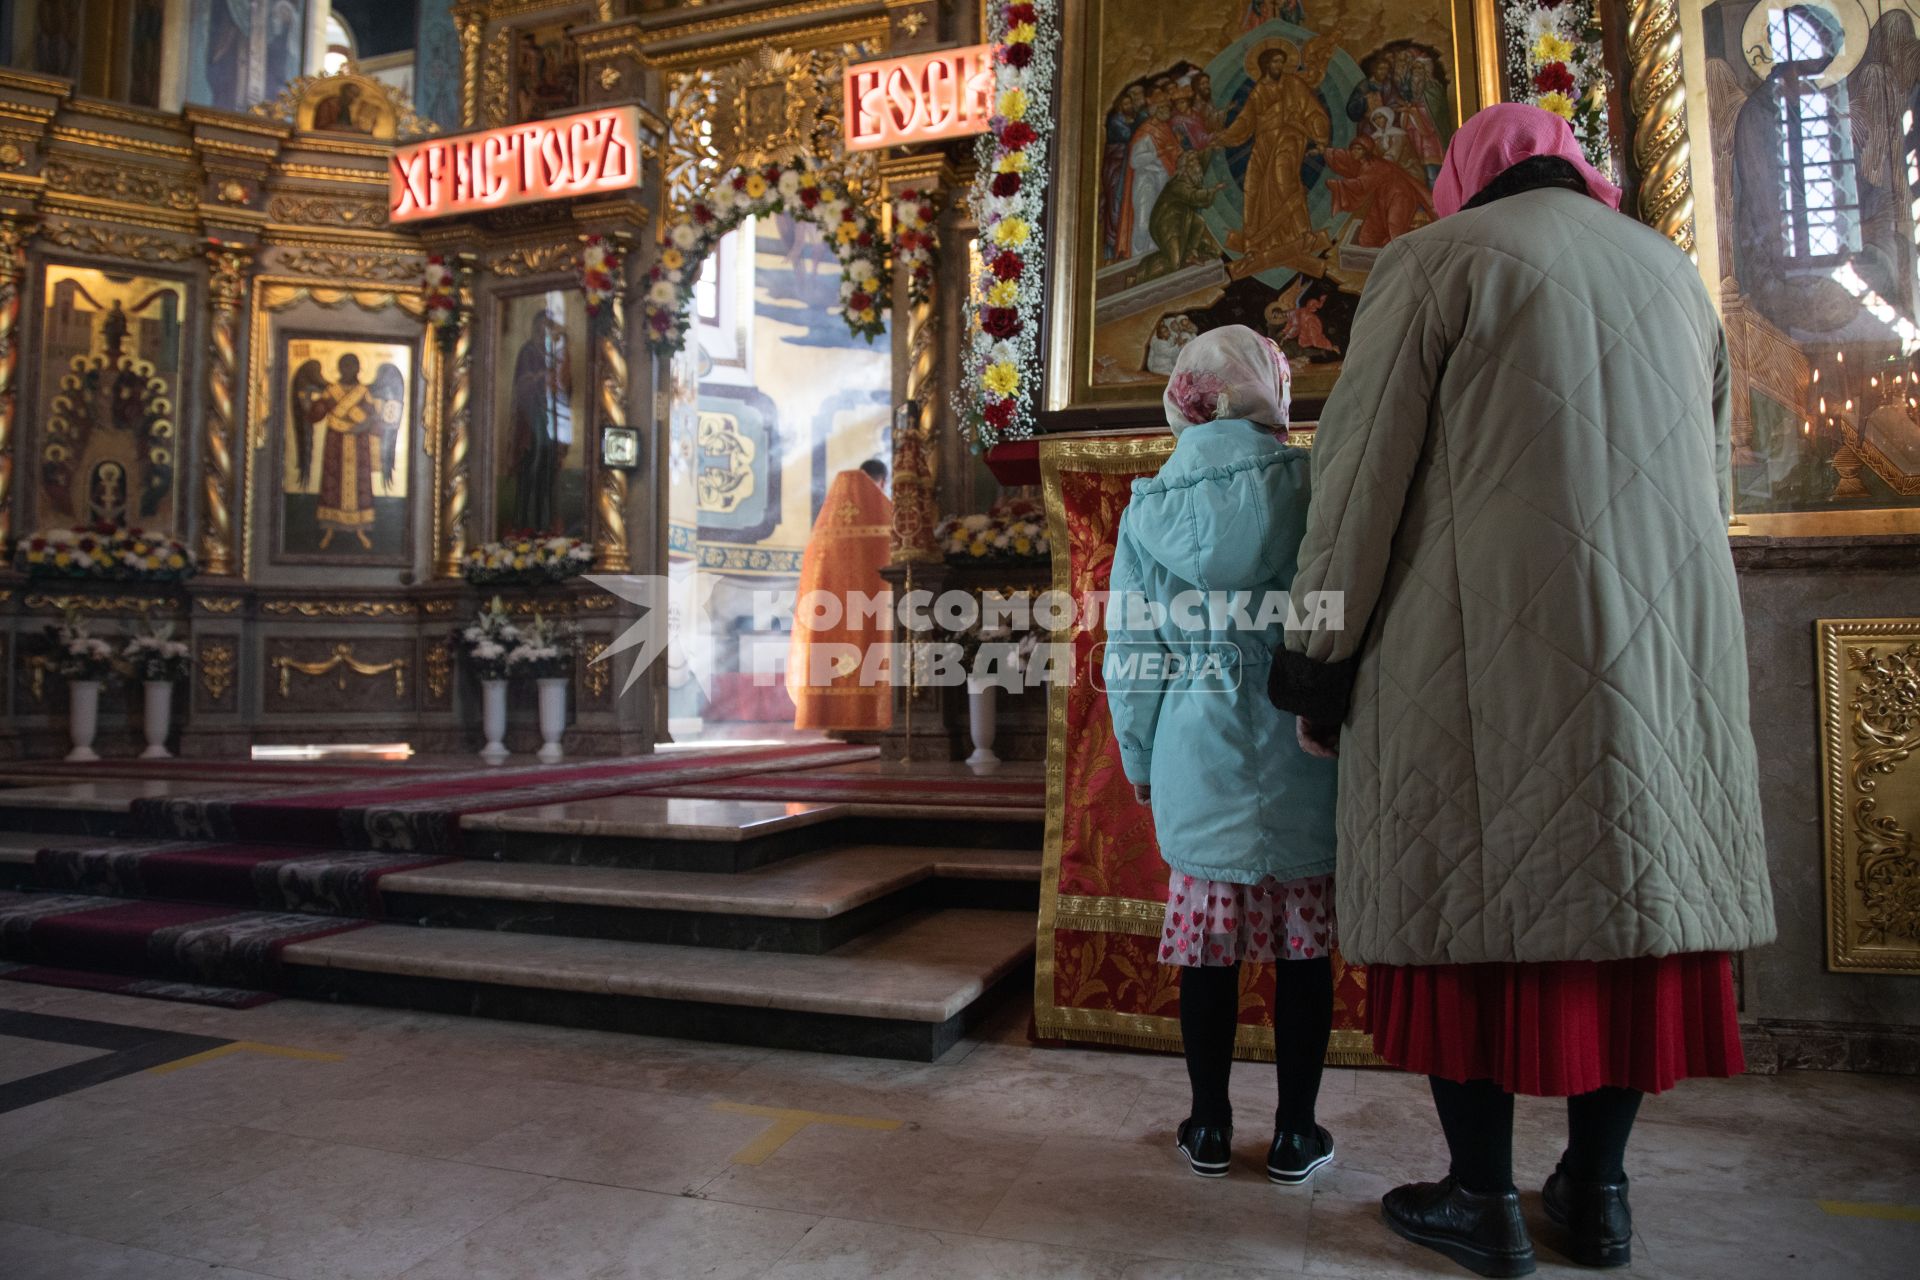 Пермь. Священнослужитель  во время пасхальной службы в храме.